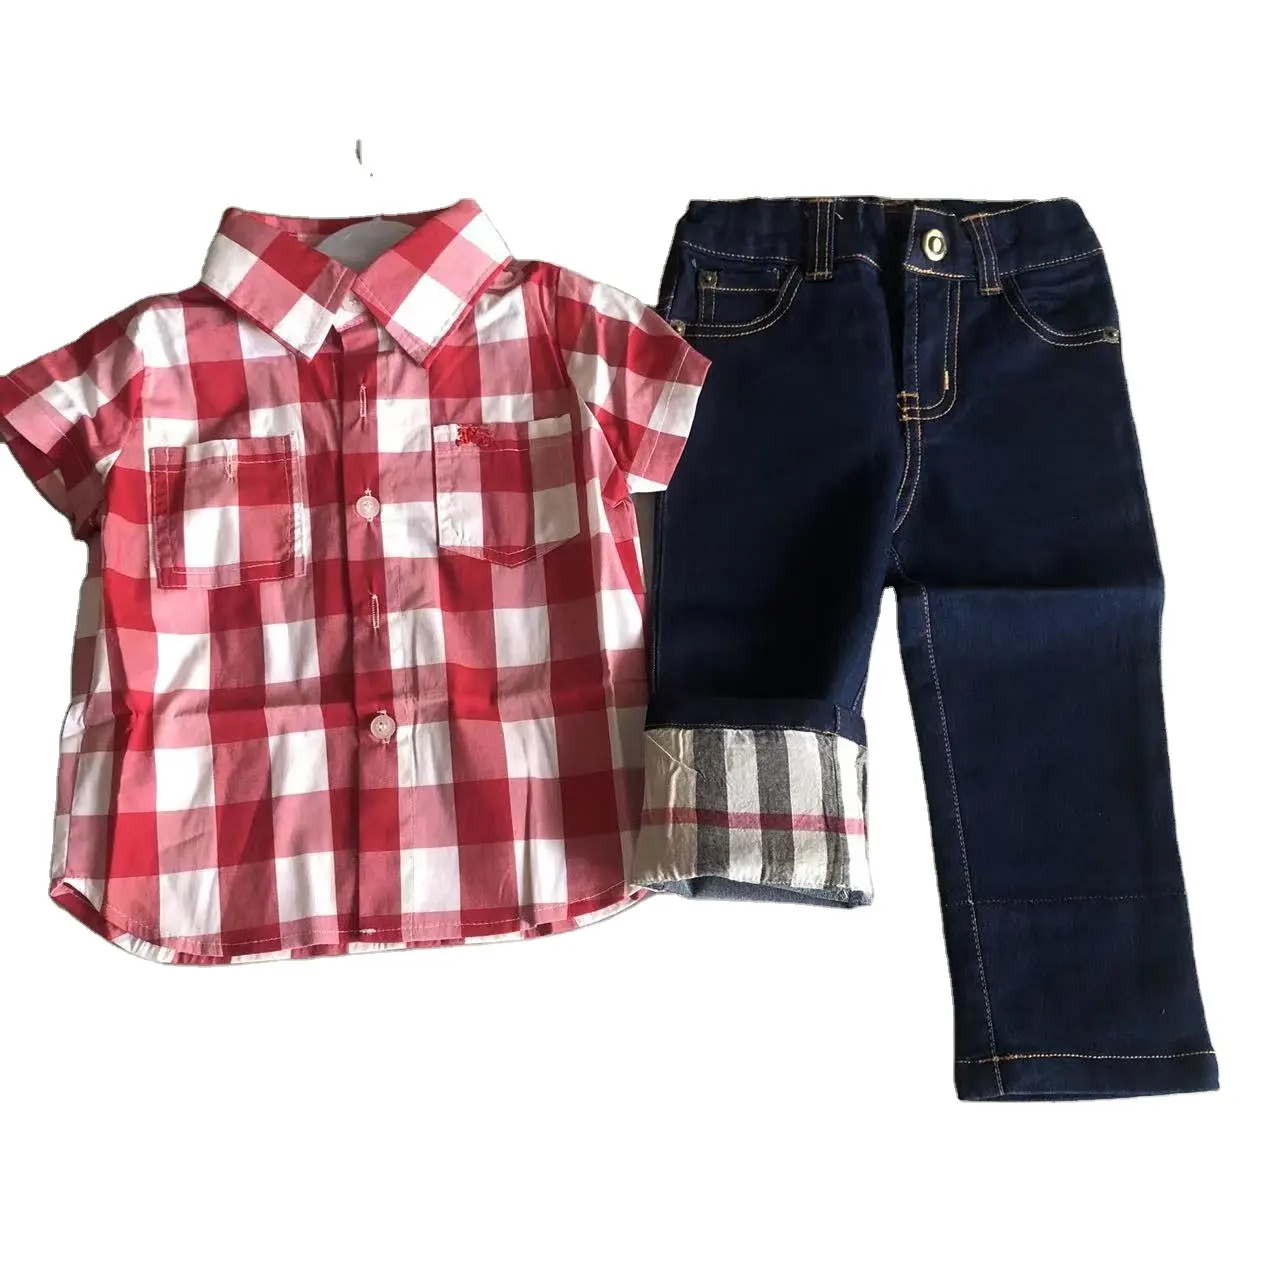 Conjuntos de roupas infantis, conjuntos de roupas clássicas para bebês, crianças, casuais, camiseta + calça jeans, conjuntos 2in